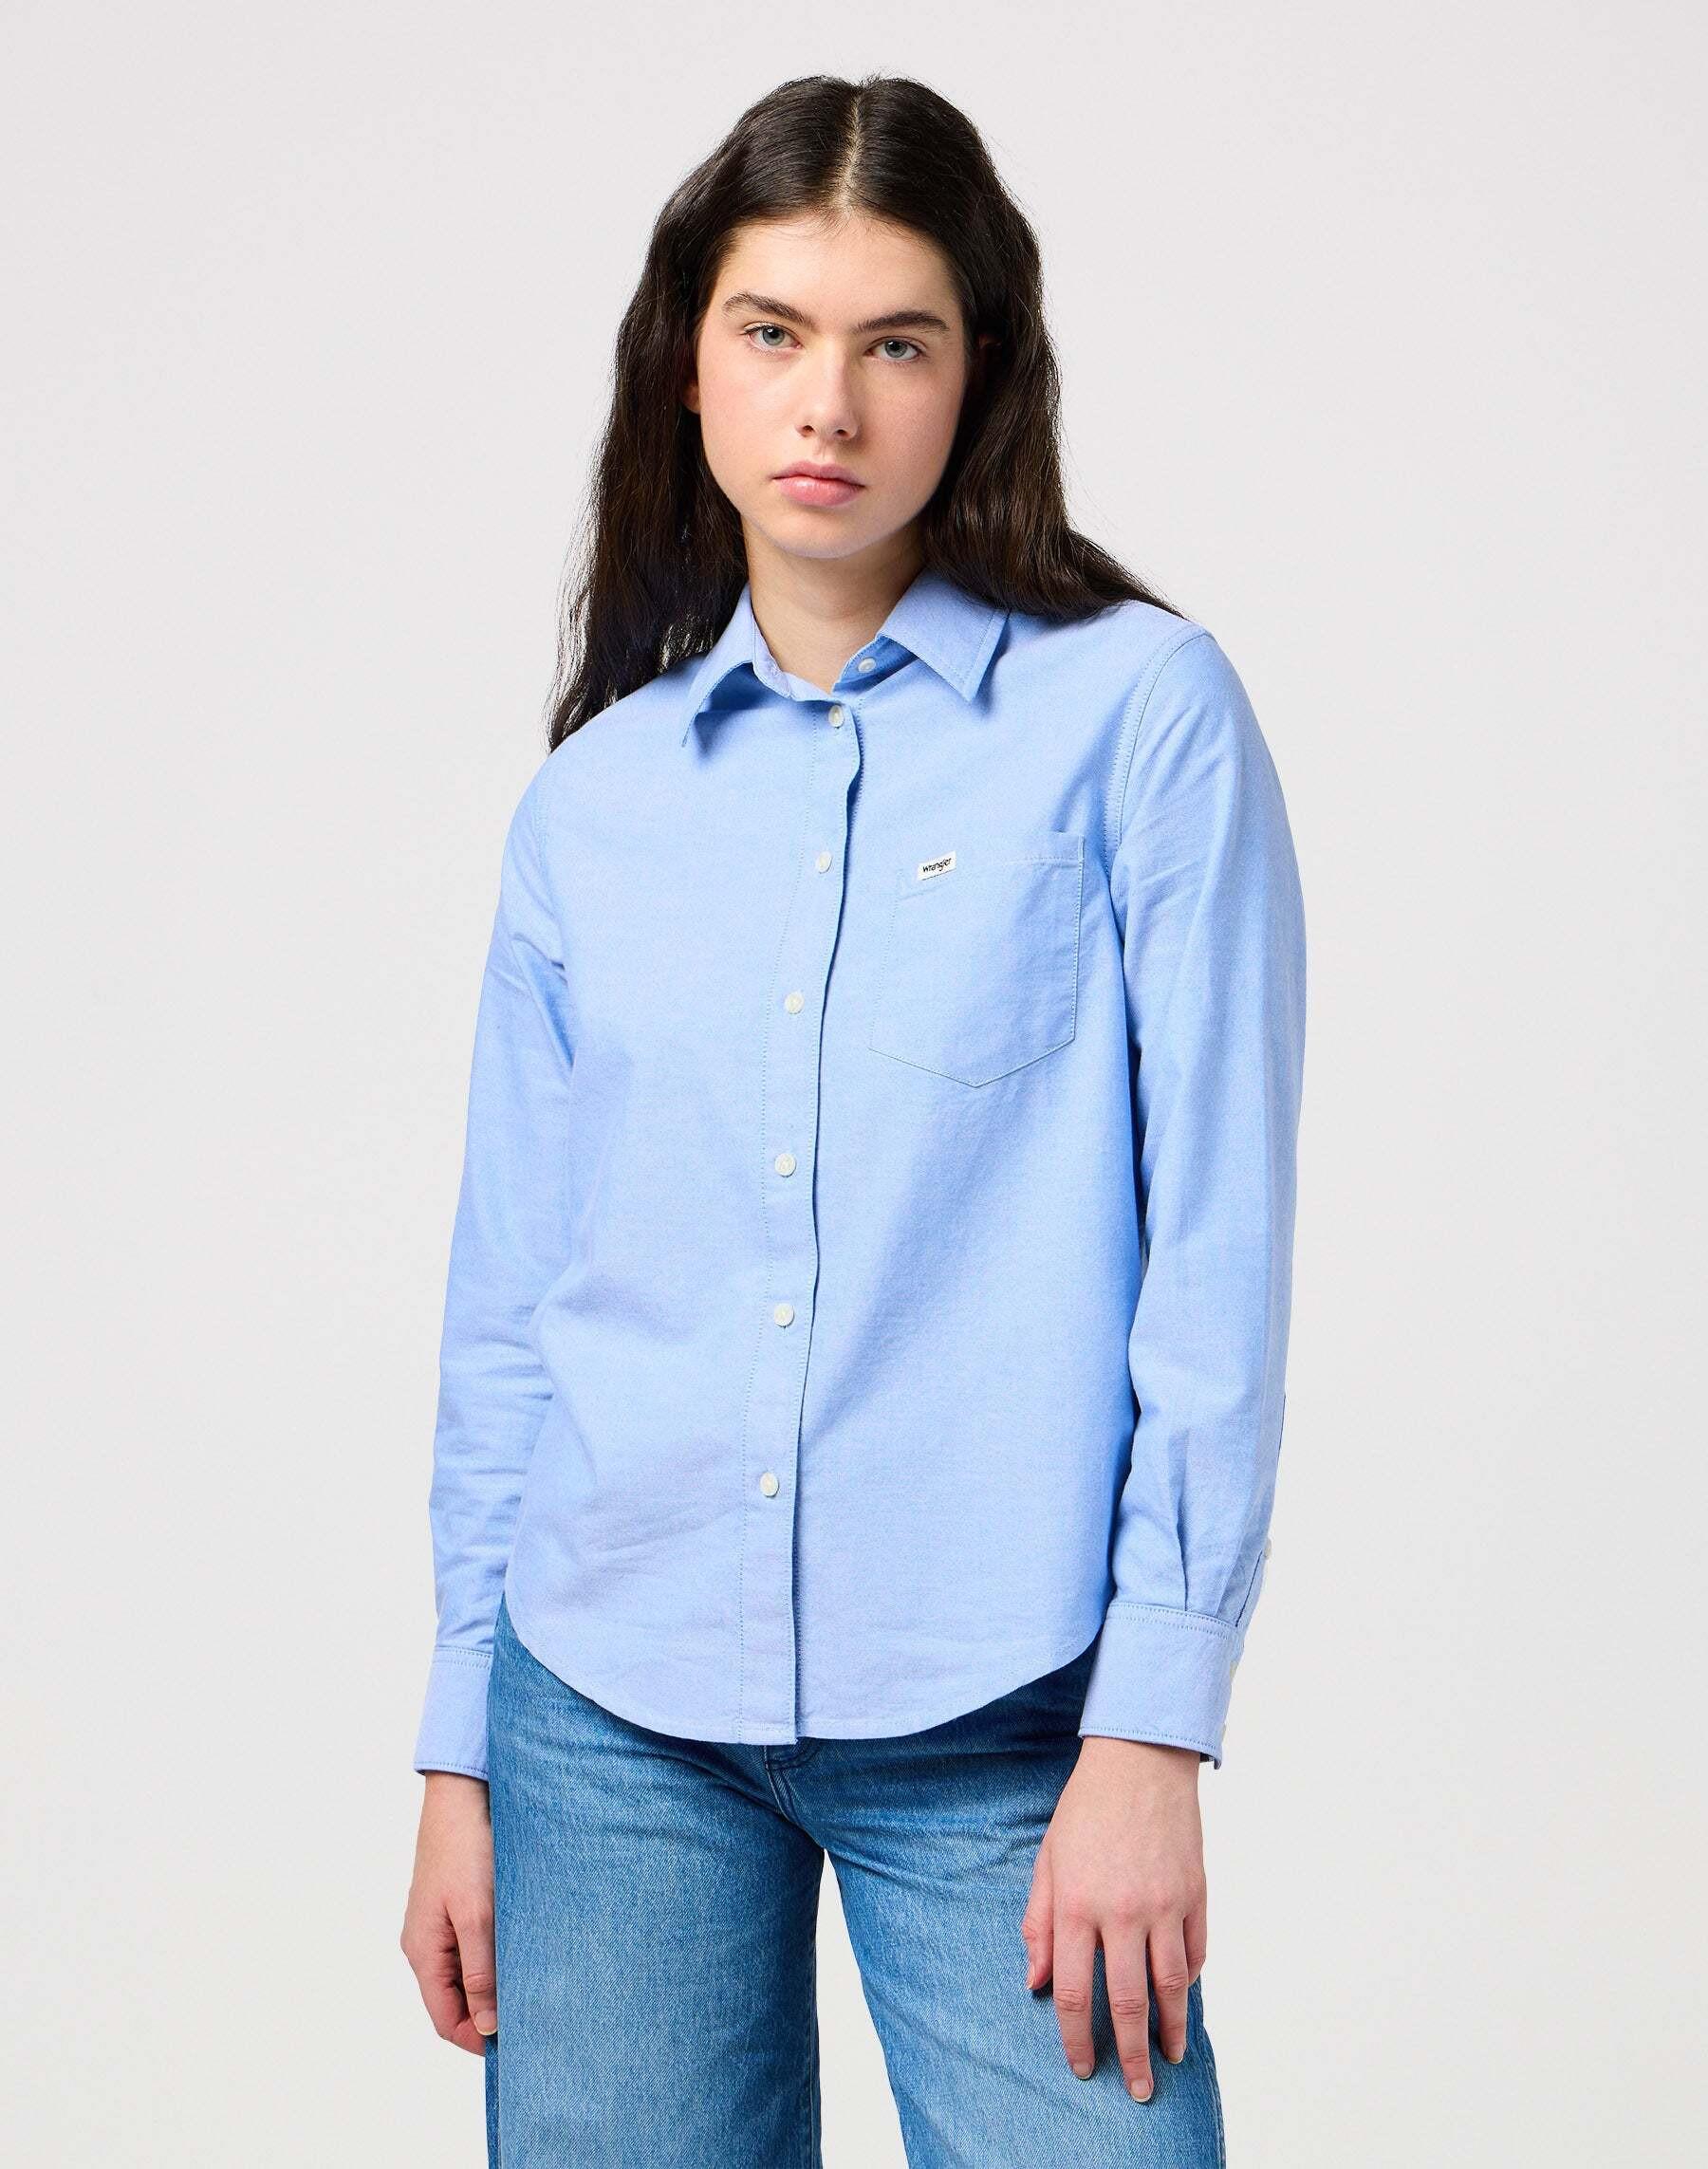 Hemden One Pocket Shirt Damen Hellblau M von Wrangler